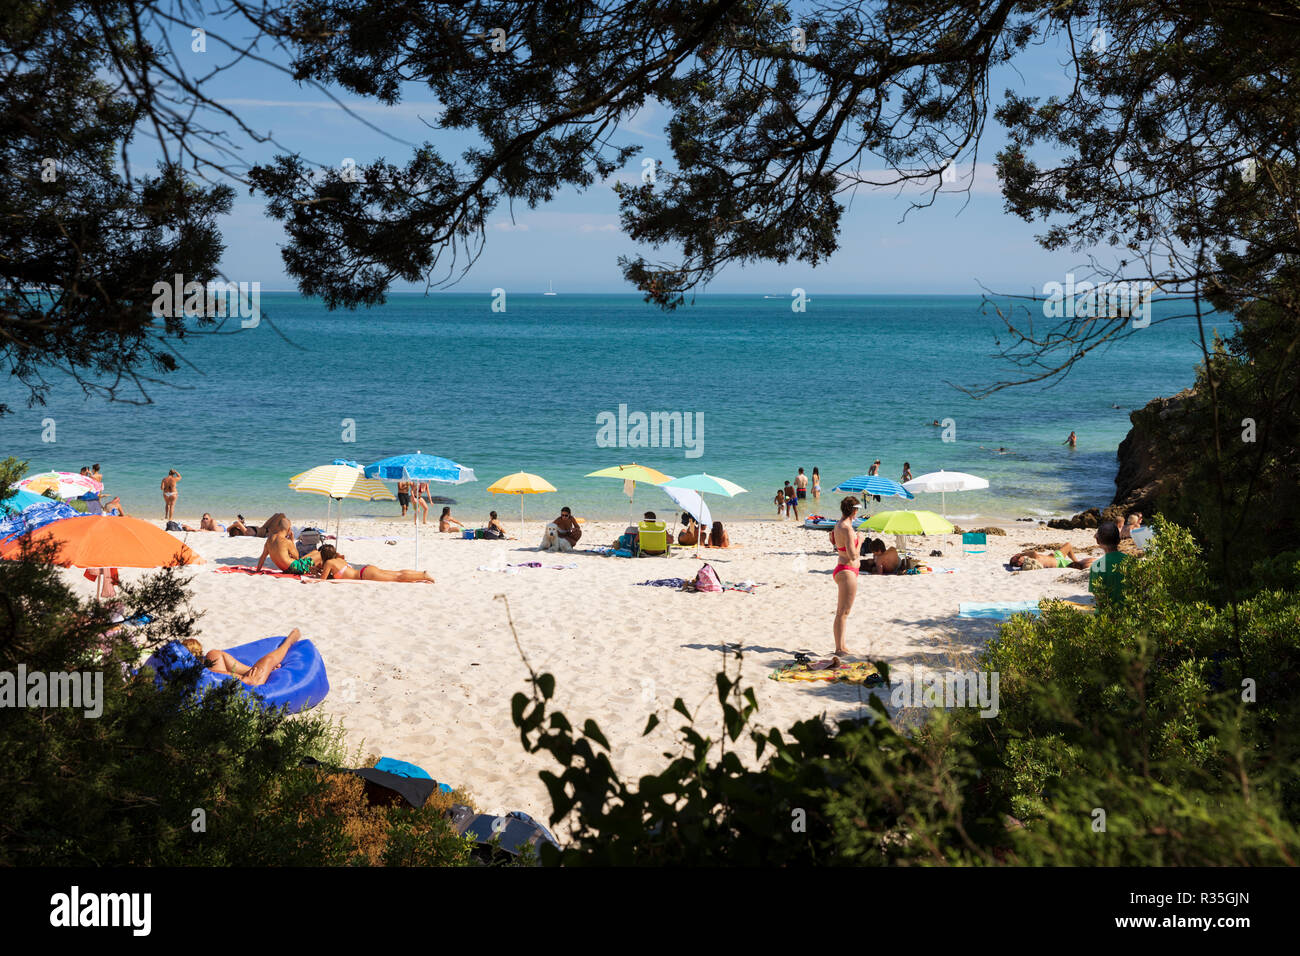 Praia dos Coelhos sul pomeriggio estivo, Portinho da Arrabida, Parco Naturale di Arrabida, distretto di Setubal, regione di Lisbona, Portogallo, Europa Foto Stock